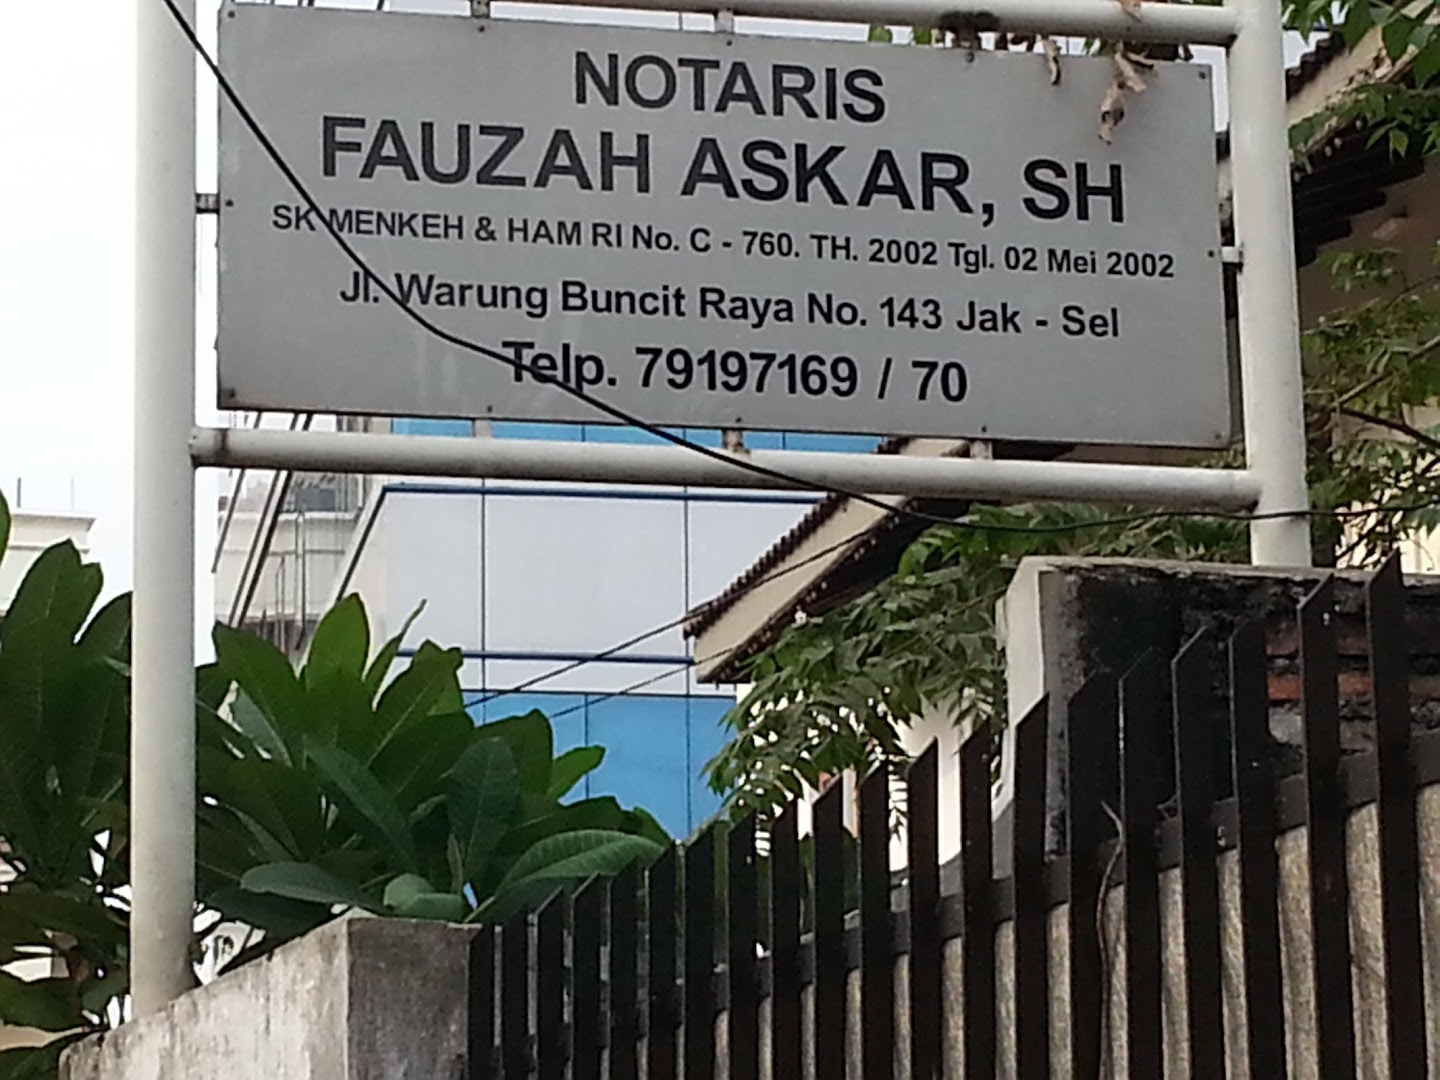 Notaris/ppat Fauzah Askar, Sh Photo